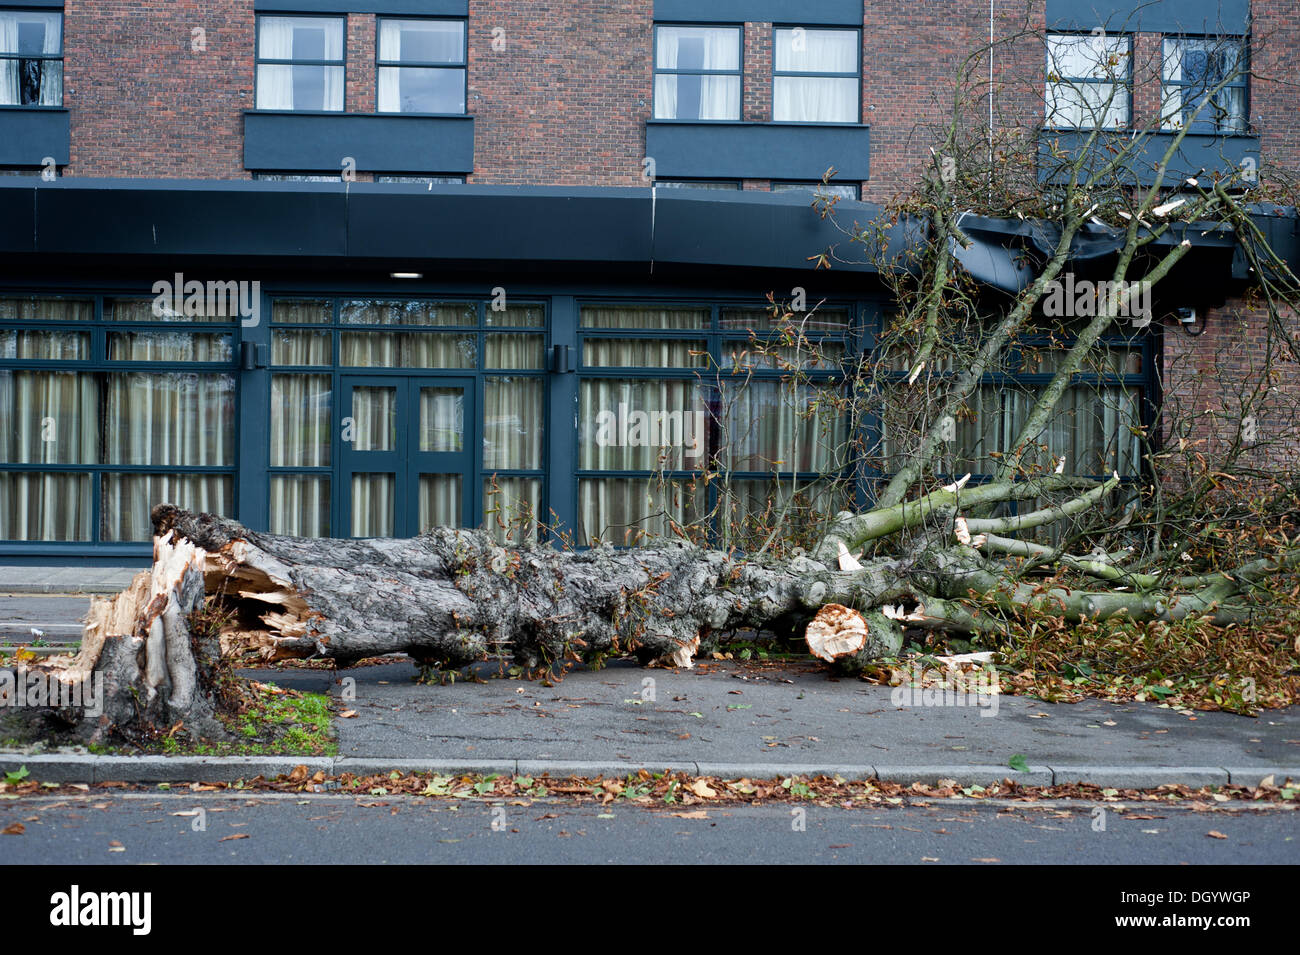 Londres, Reino Unido - 28 de octubre de 2013: un árbol caído golpeó el techo del hotel Double Tree by Hilton en Ealing, pues la ciudad afectados por la tormenta.La tormenta, denominada St Jude, trajo el clima más ventosos para golpear el Reino Unido desde 1987. Crédito: Piero Cruciatti/Alamy Live News Foto de stock